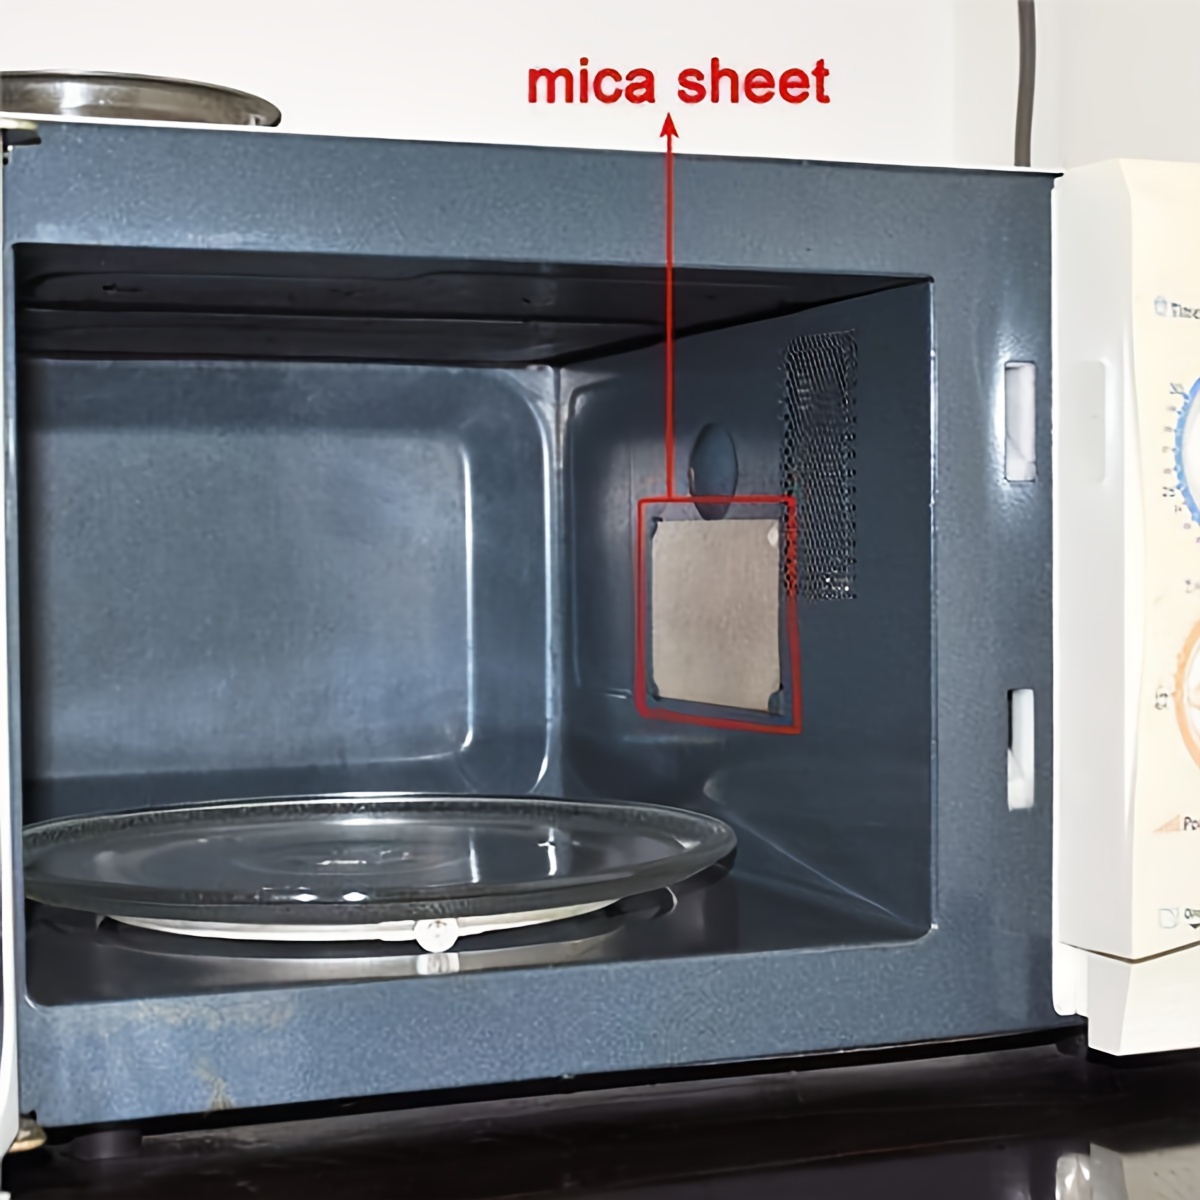 10 láminas universales de mica para horno microondas, hojas de repuesto.